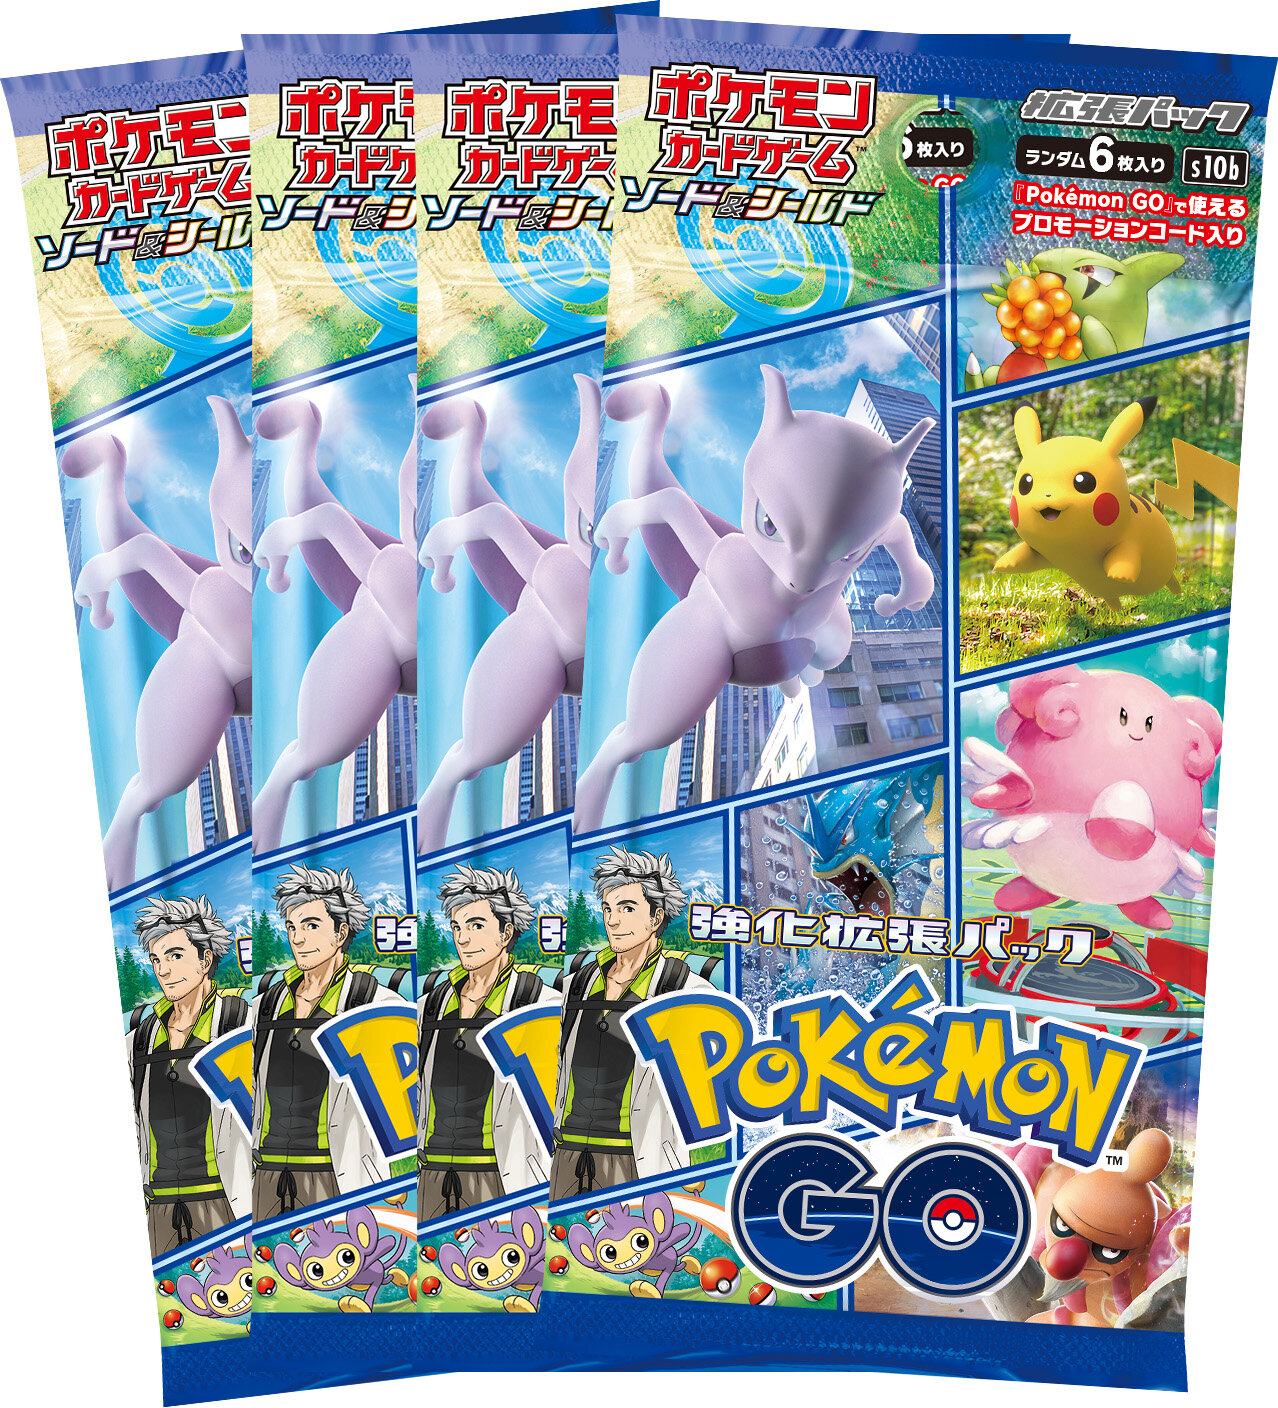 強化拡張パック「Pokémon GO」の入った、セット商品2種類の内容物を 